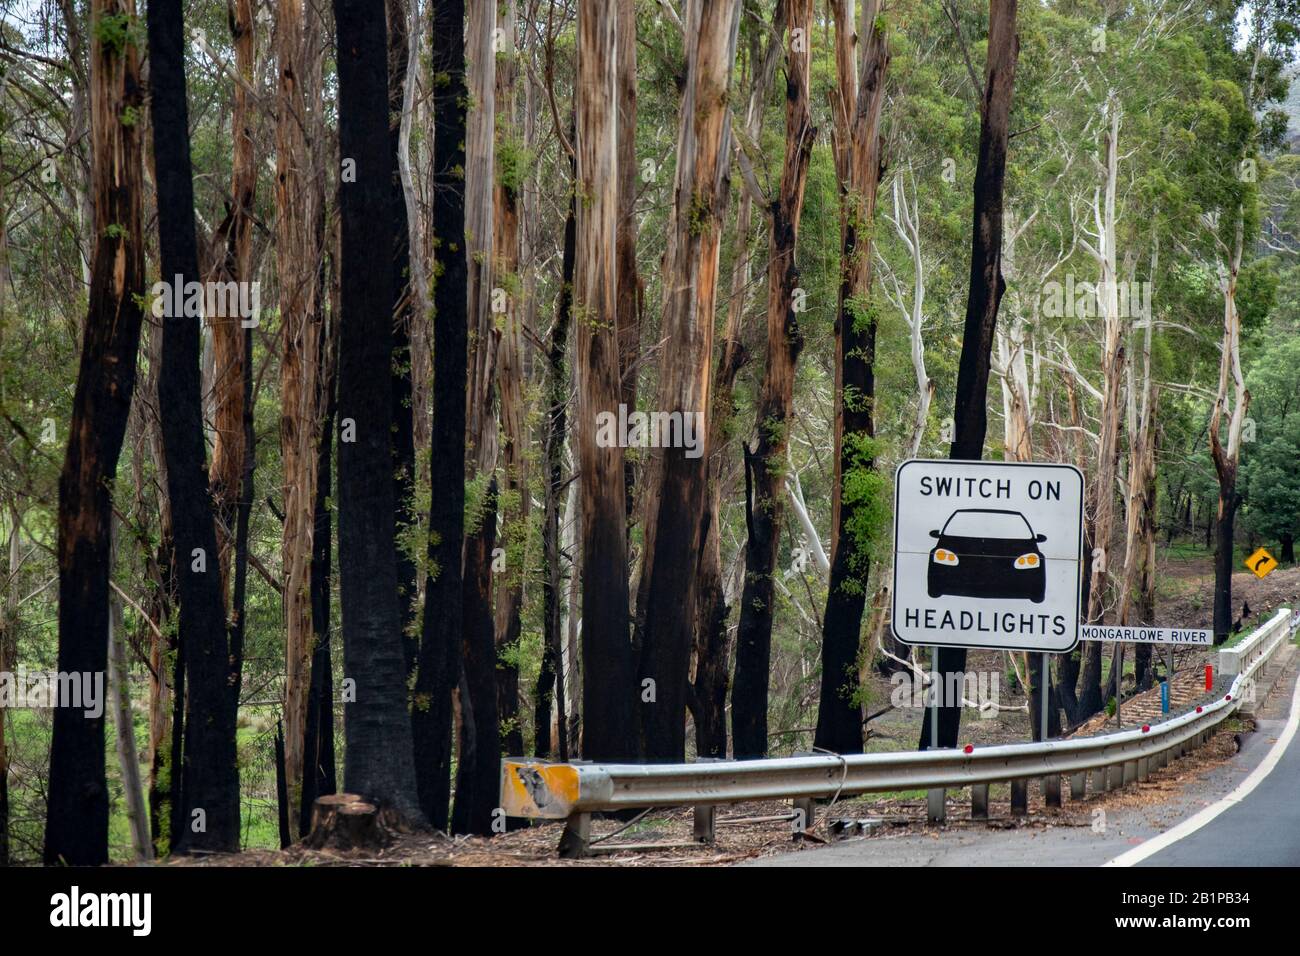 Australische Bushfire Nachwirkungen und Erholung. Nur wenige Wochen nach den verheerenden Bränden kehrt Grün in die Gegend zurück. Kings Highway, Clyde Mountain, NSW. Stockfoto